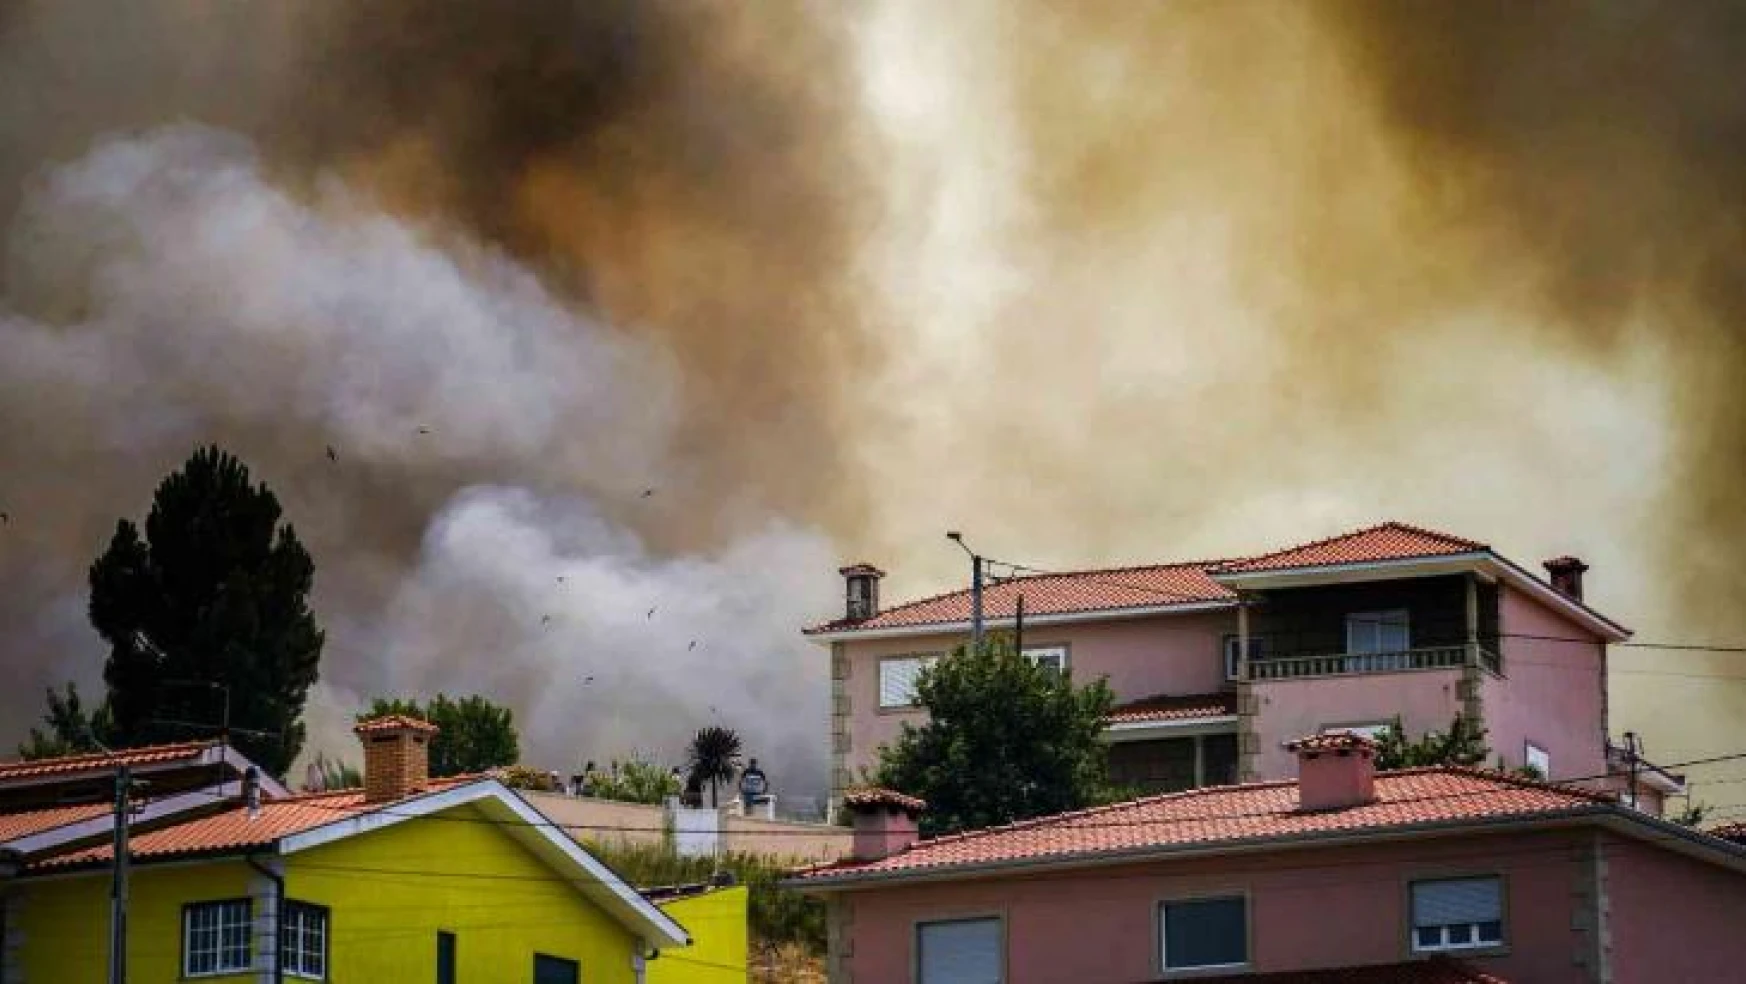 Portekiz'de yangın söndürme uçağı düştü: 1 ölü